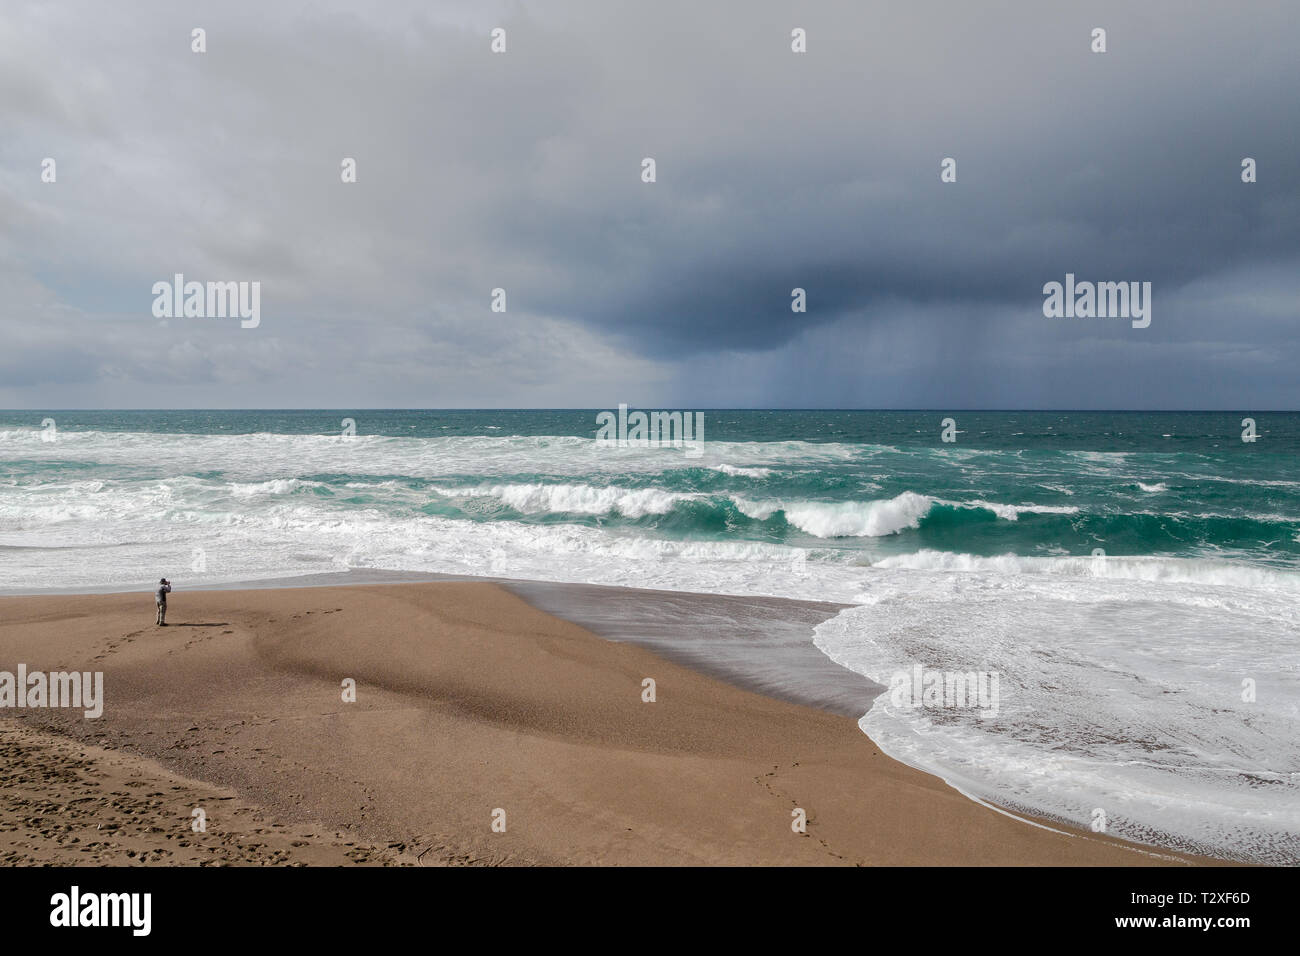 Un photographe est faible par rapport à la mer agitée et sombre de nuages de pluie sur la côte nord de la Californie. Banque D'Images